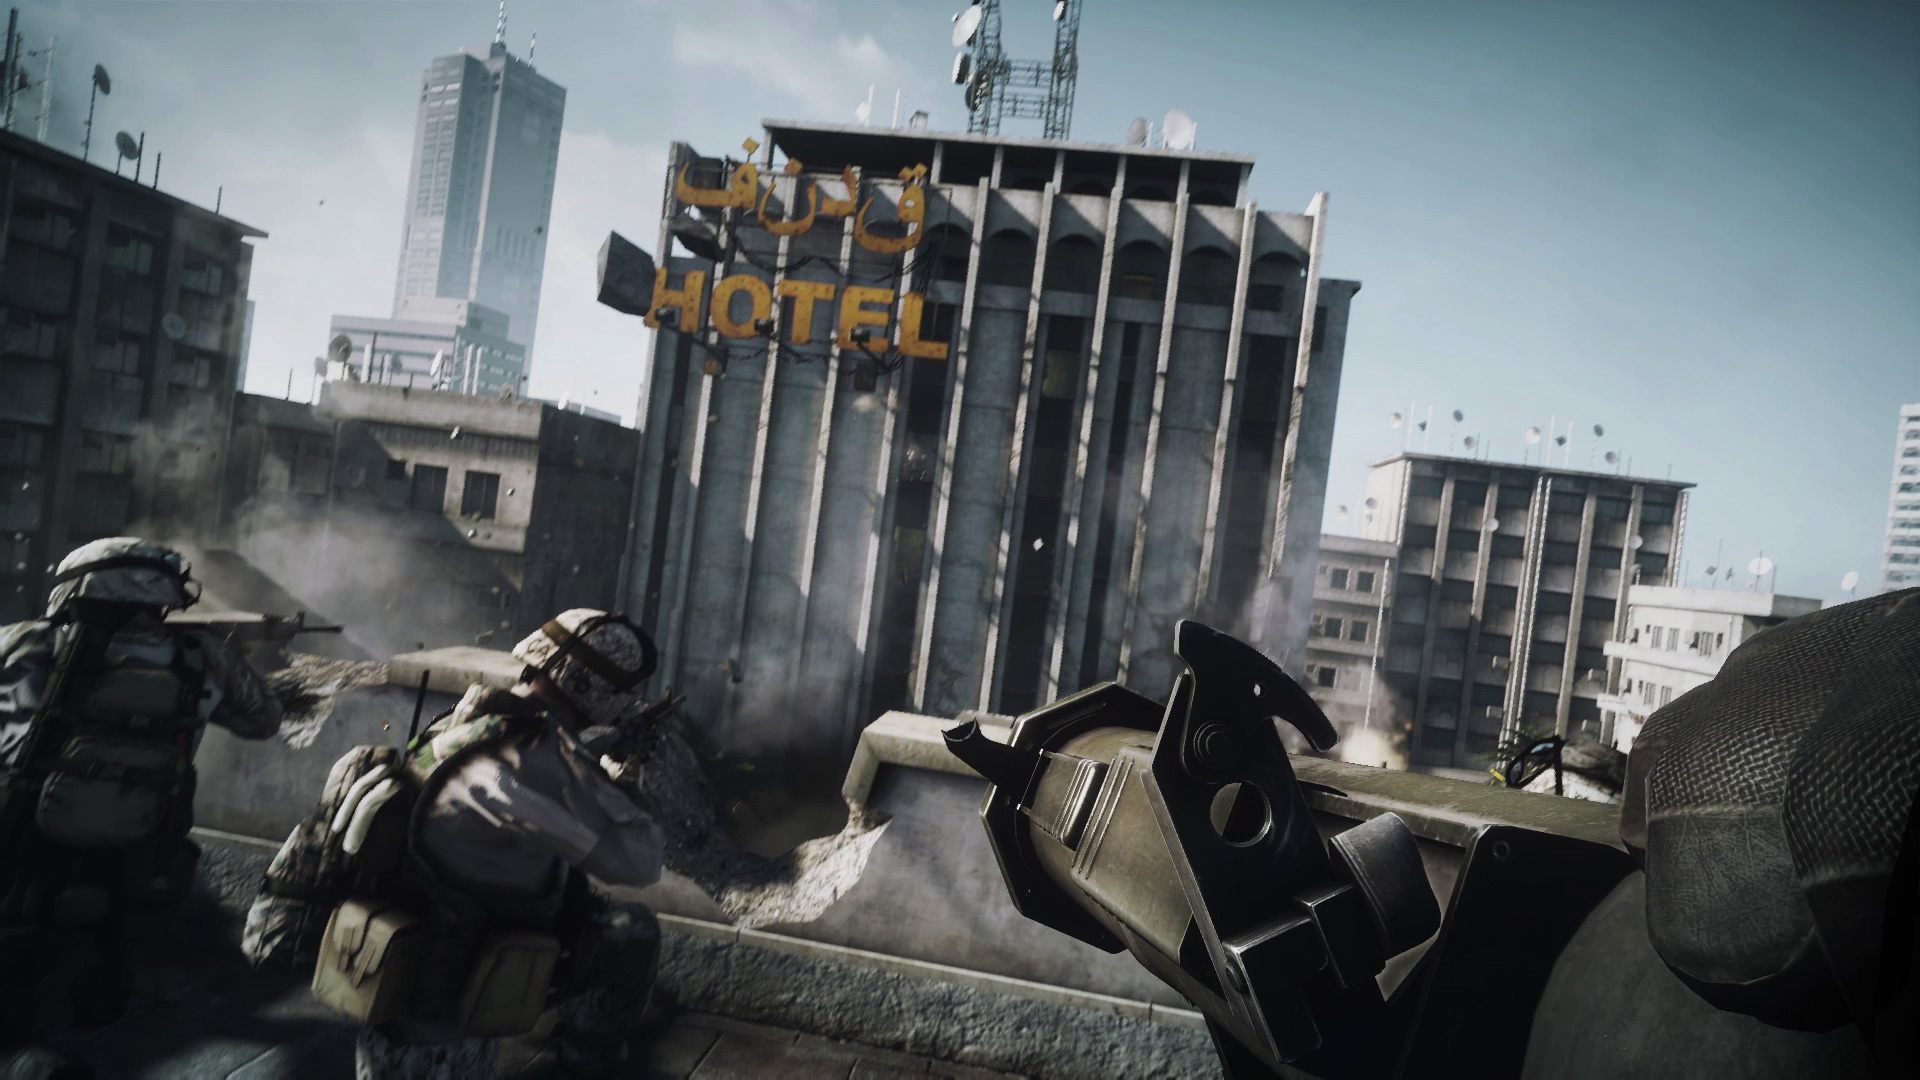 Battlefield 3 - Hotelszene Trailer